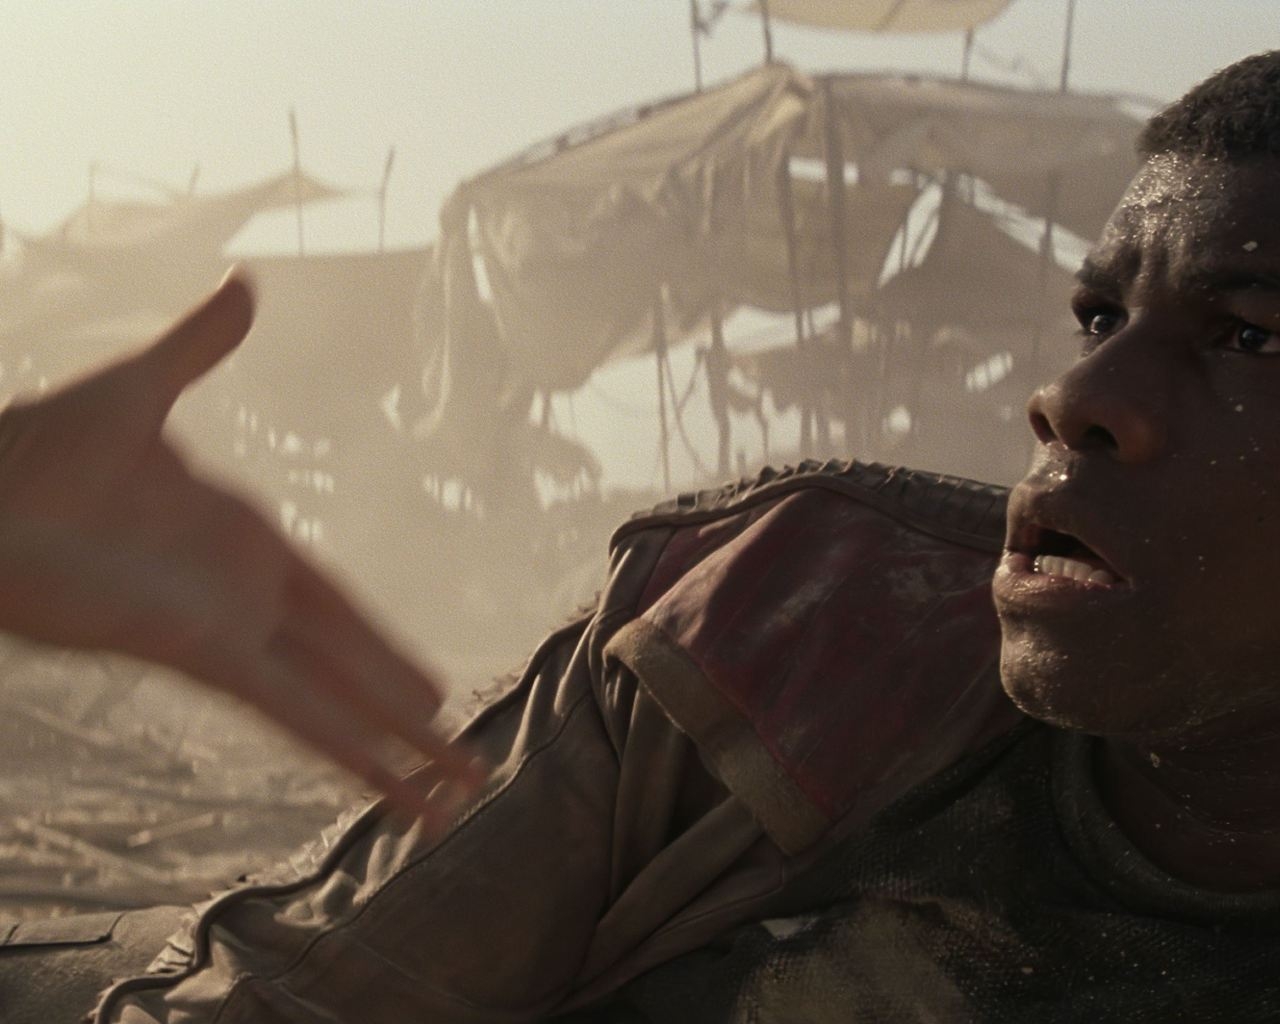 Star Wars The Force Awakens John Boyega for 1280 x 1024 resolution